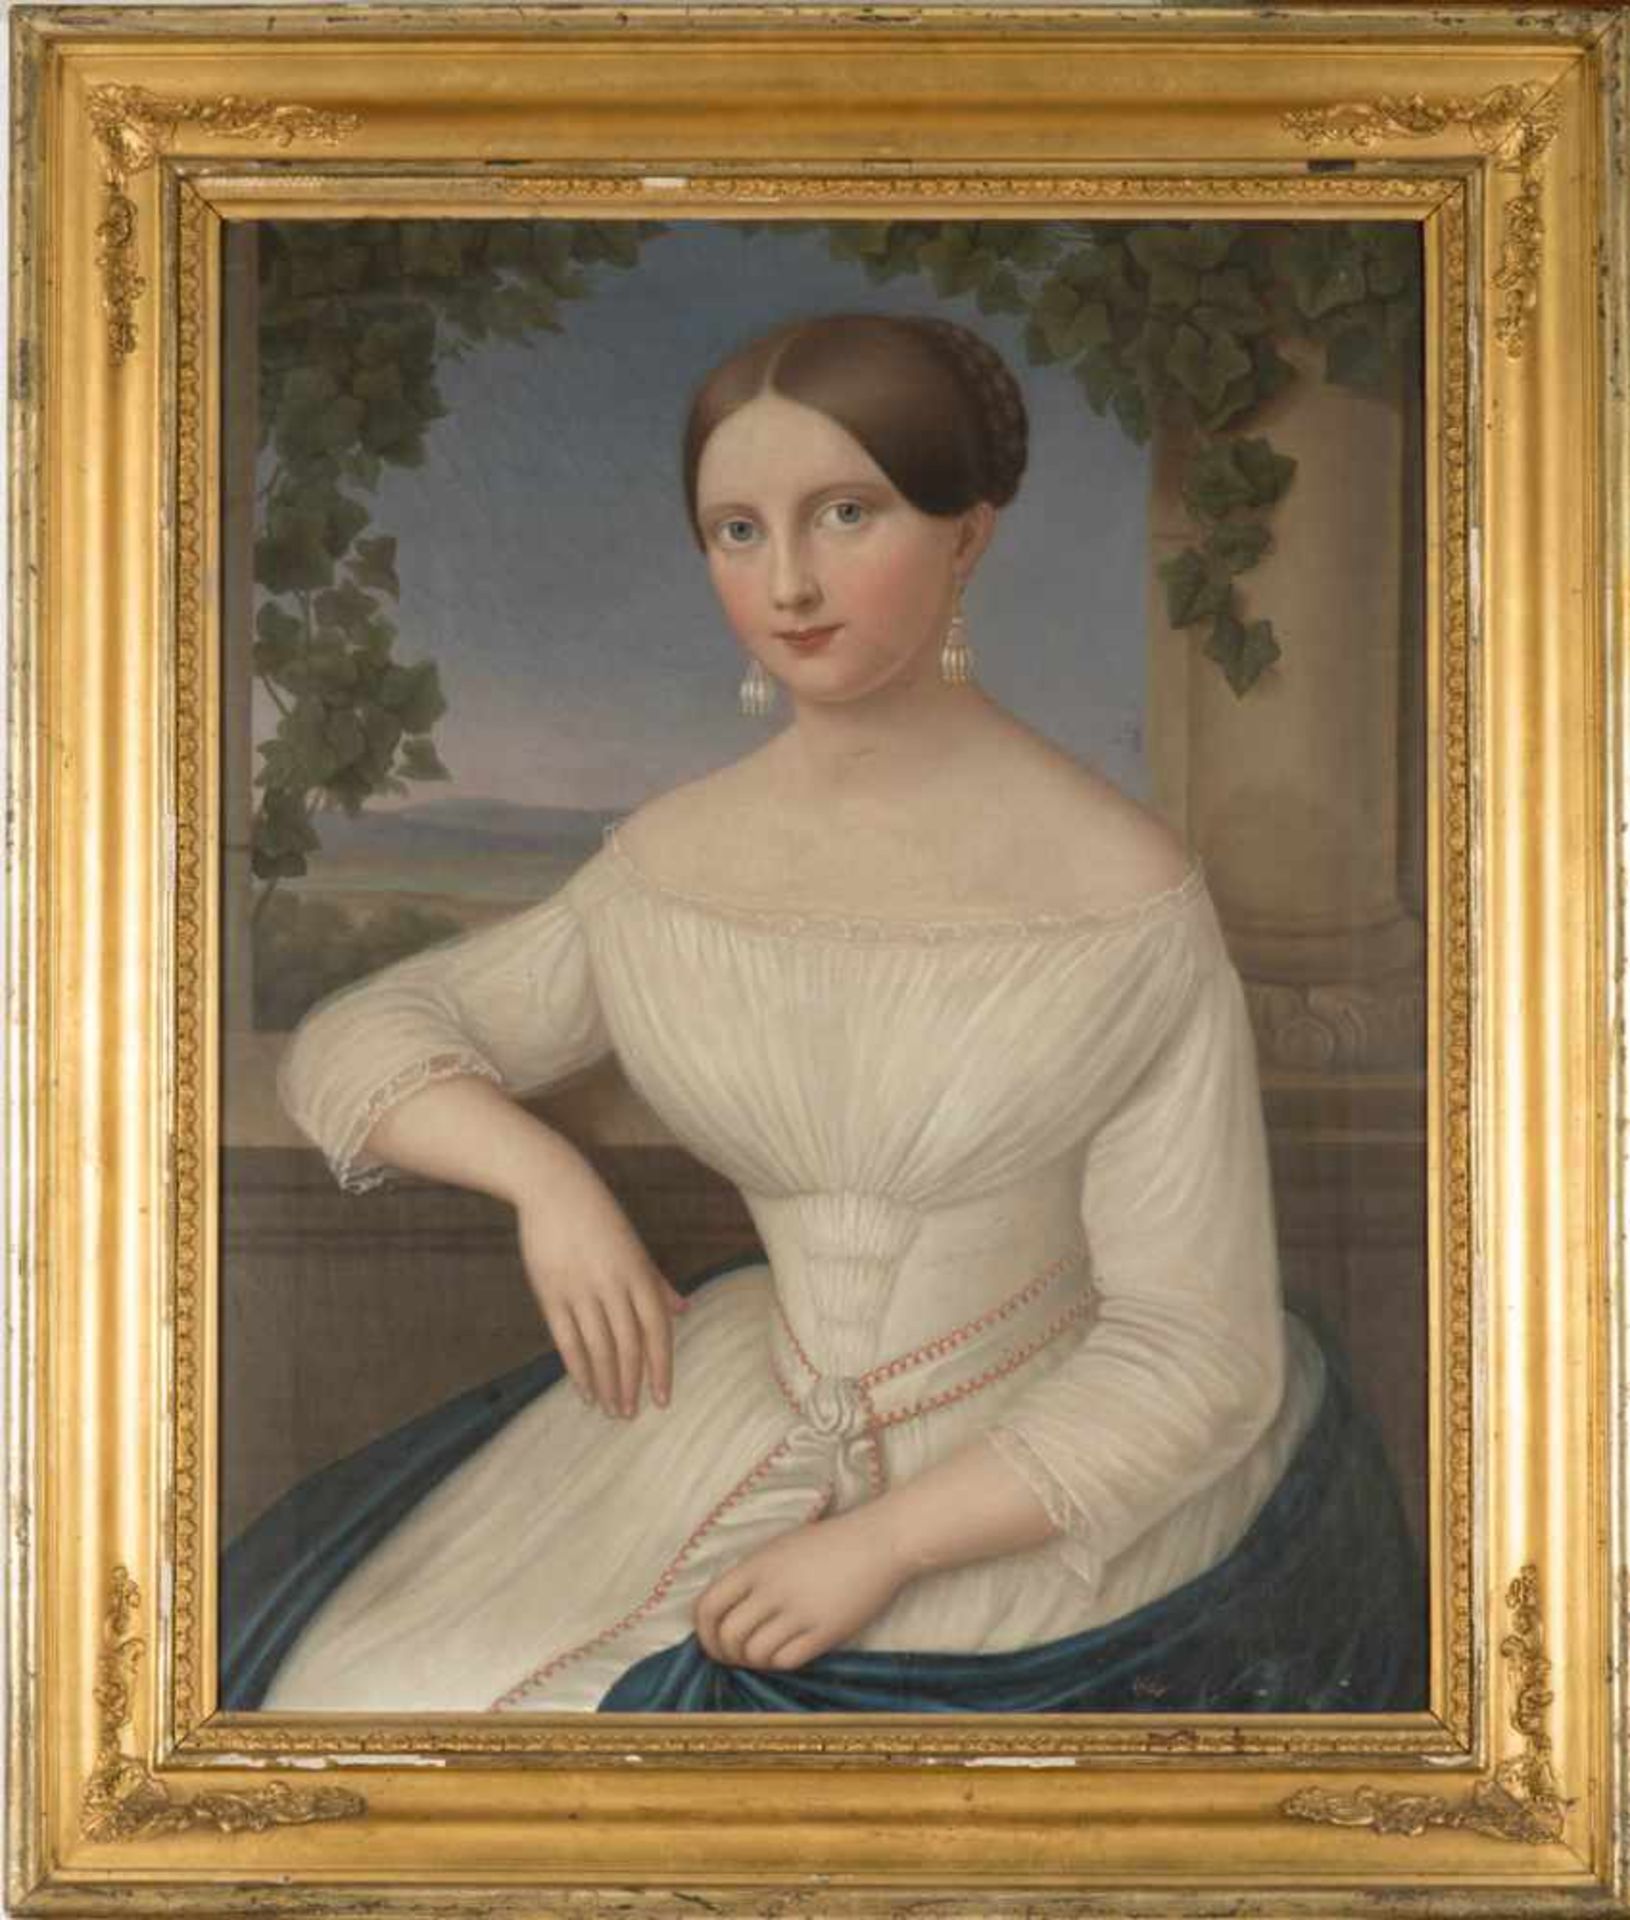 Anonymer Porträtmaler des BiedermeierPorträt einer jungen Dame in feinem weißem Kleid vor einer